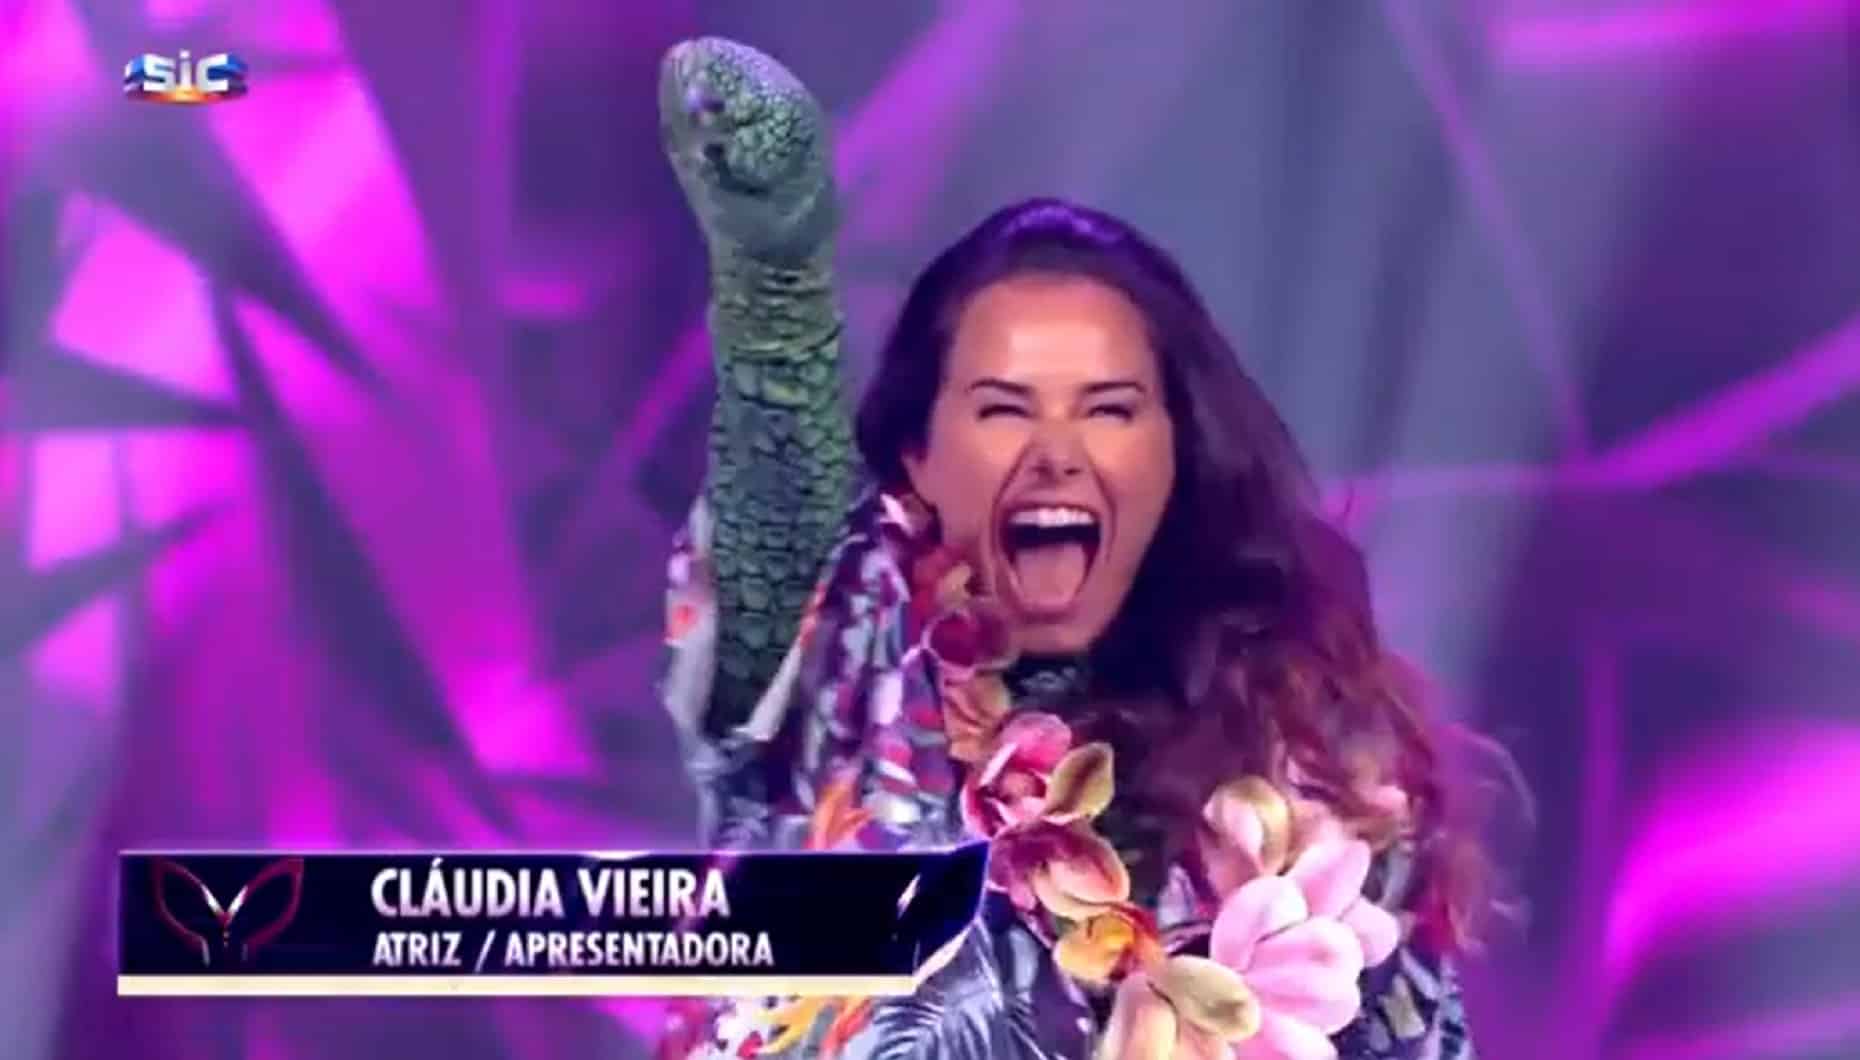 Cláudia Vieira, A Máscara, SIC